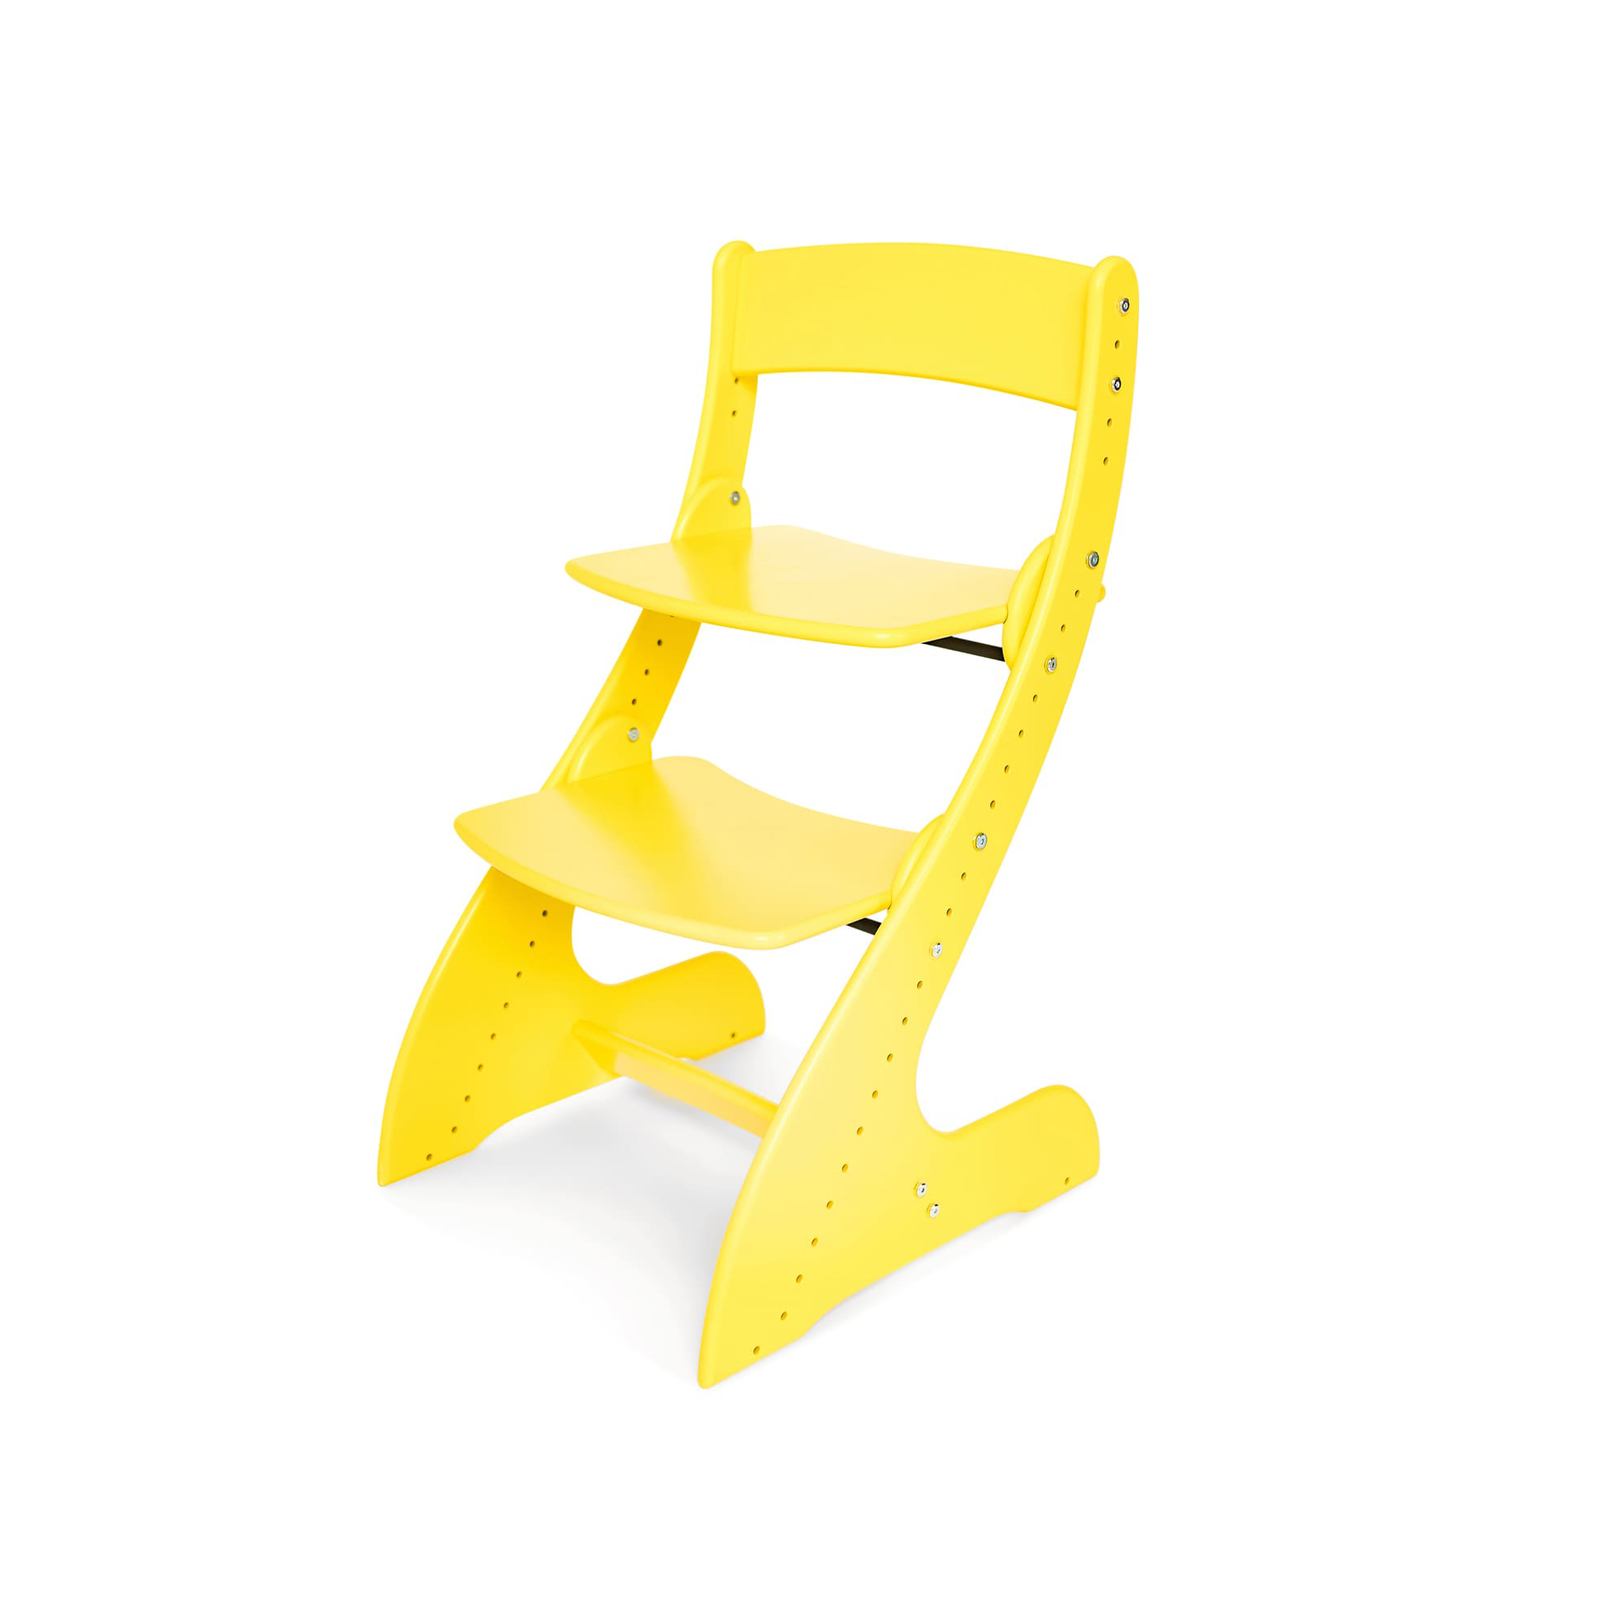 Растущий стул Павлин от МФ «Друг Кузя» - Покрытие: акриловая водоэмульсионная краска